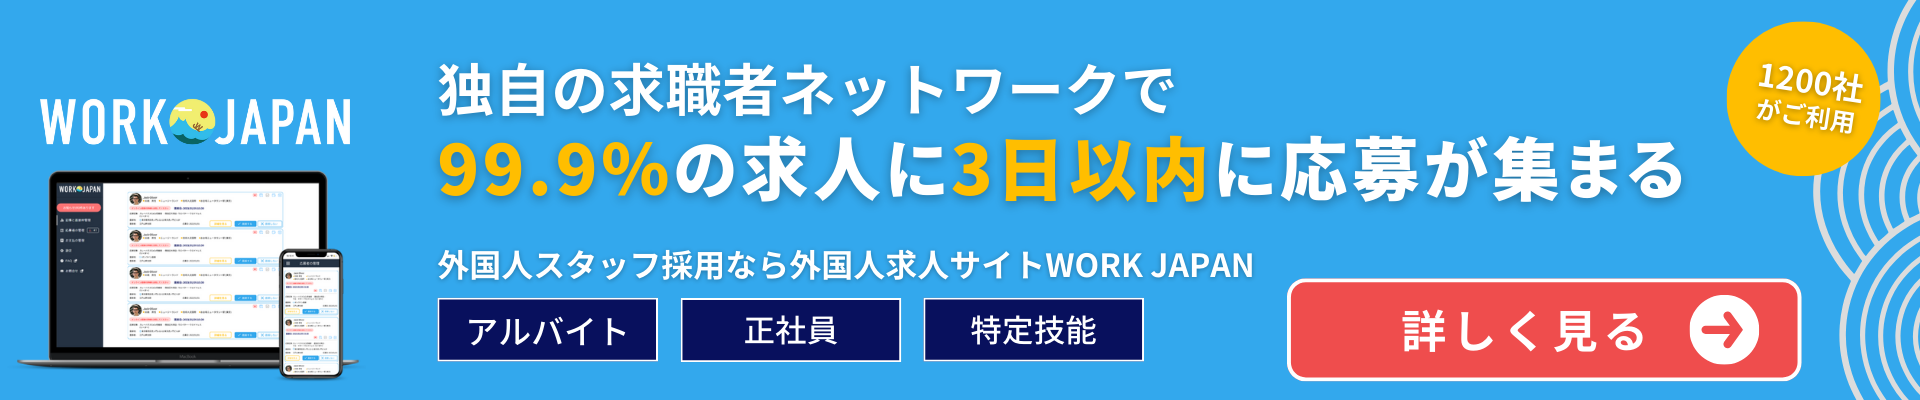 『アルバイト・正社員・特定技能』 すべての外国人採用に応える、外国人求人サイトWORK JAPAN